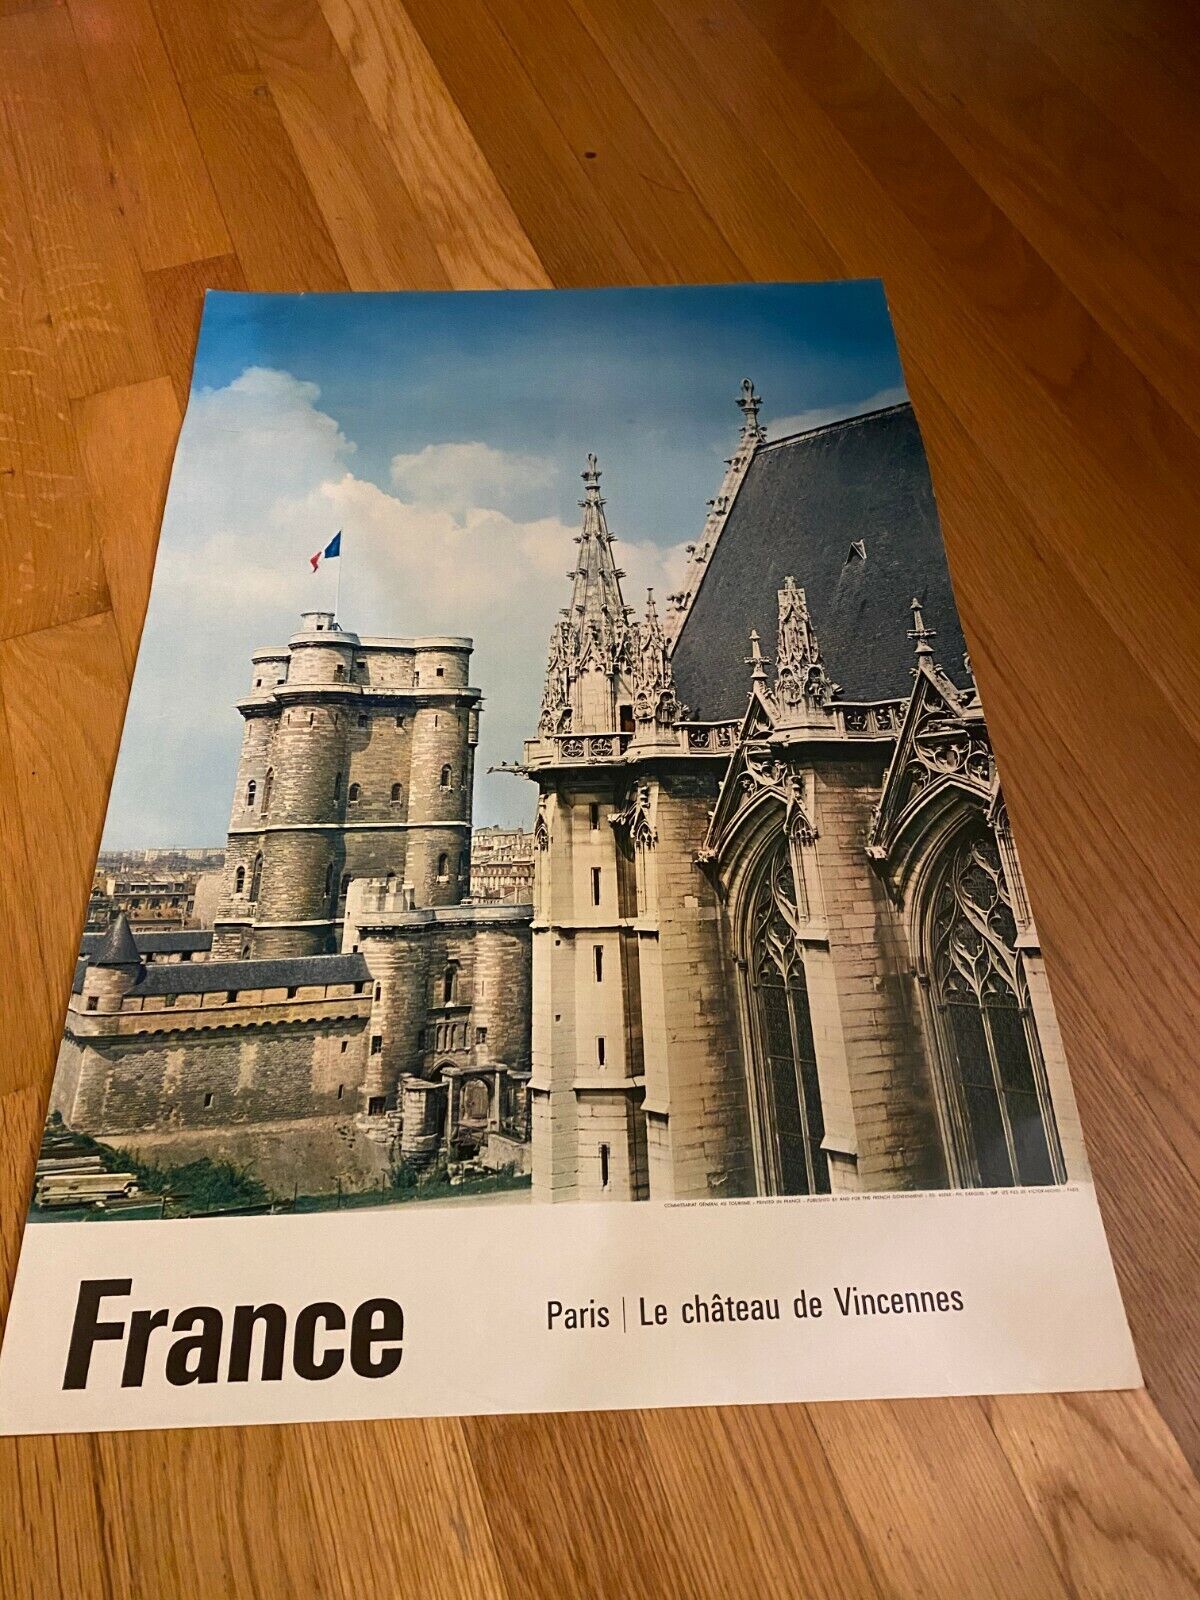 France   Paris: Le chateaux de Vincennes  Vintage poster